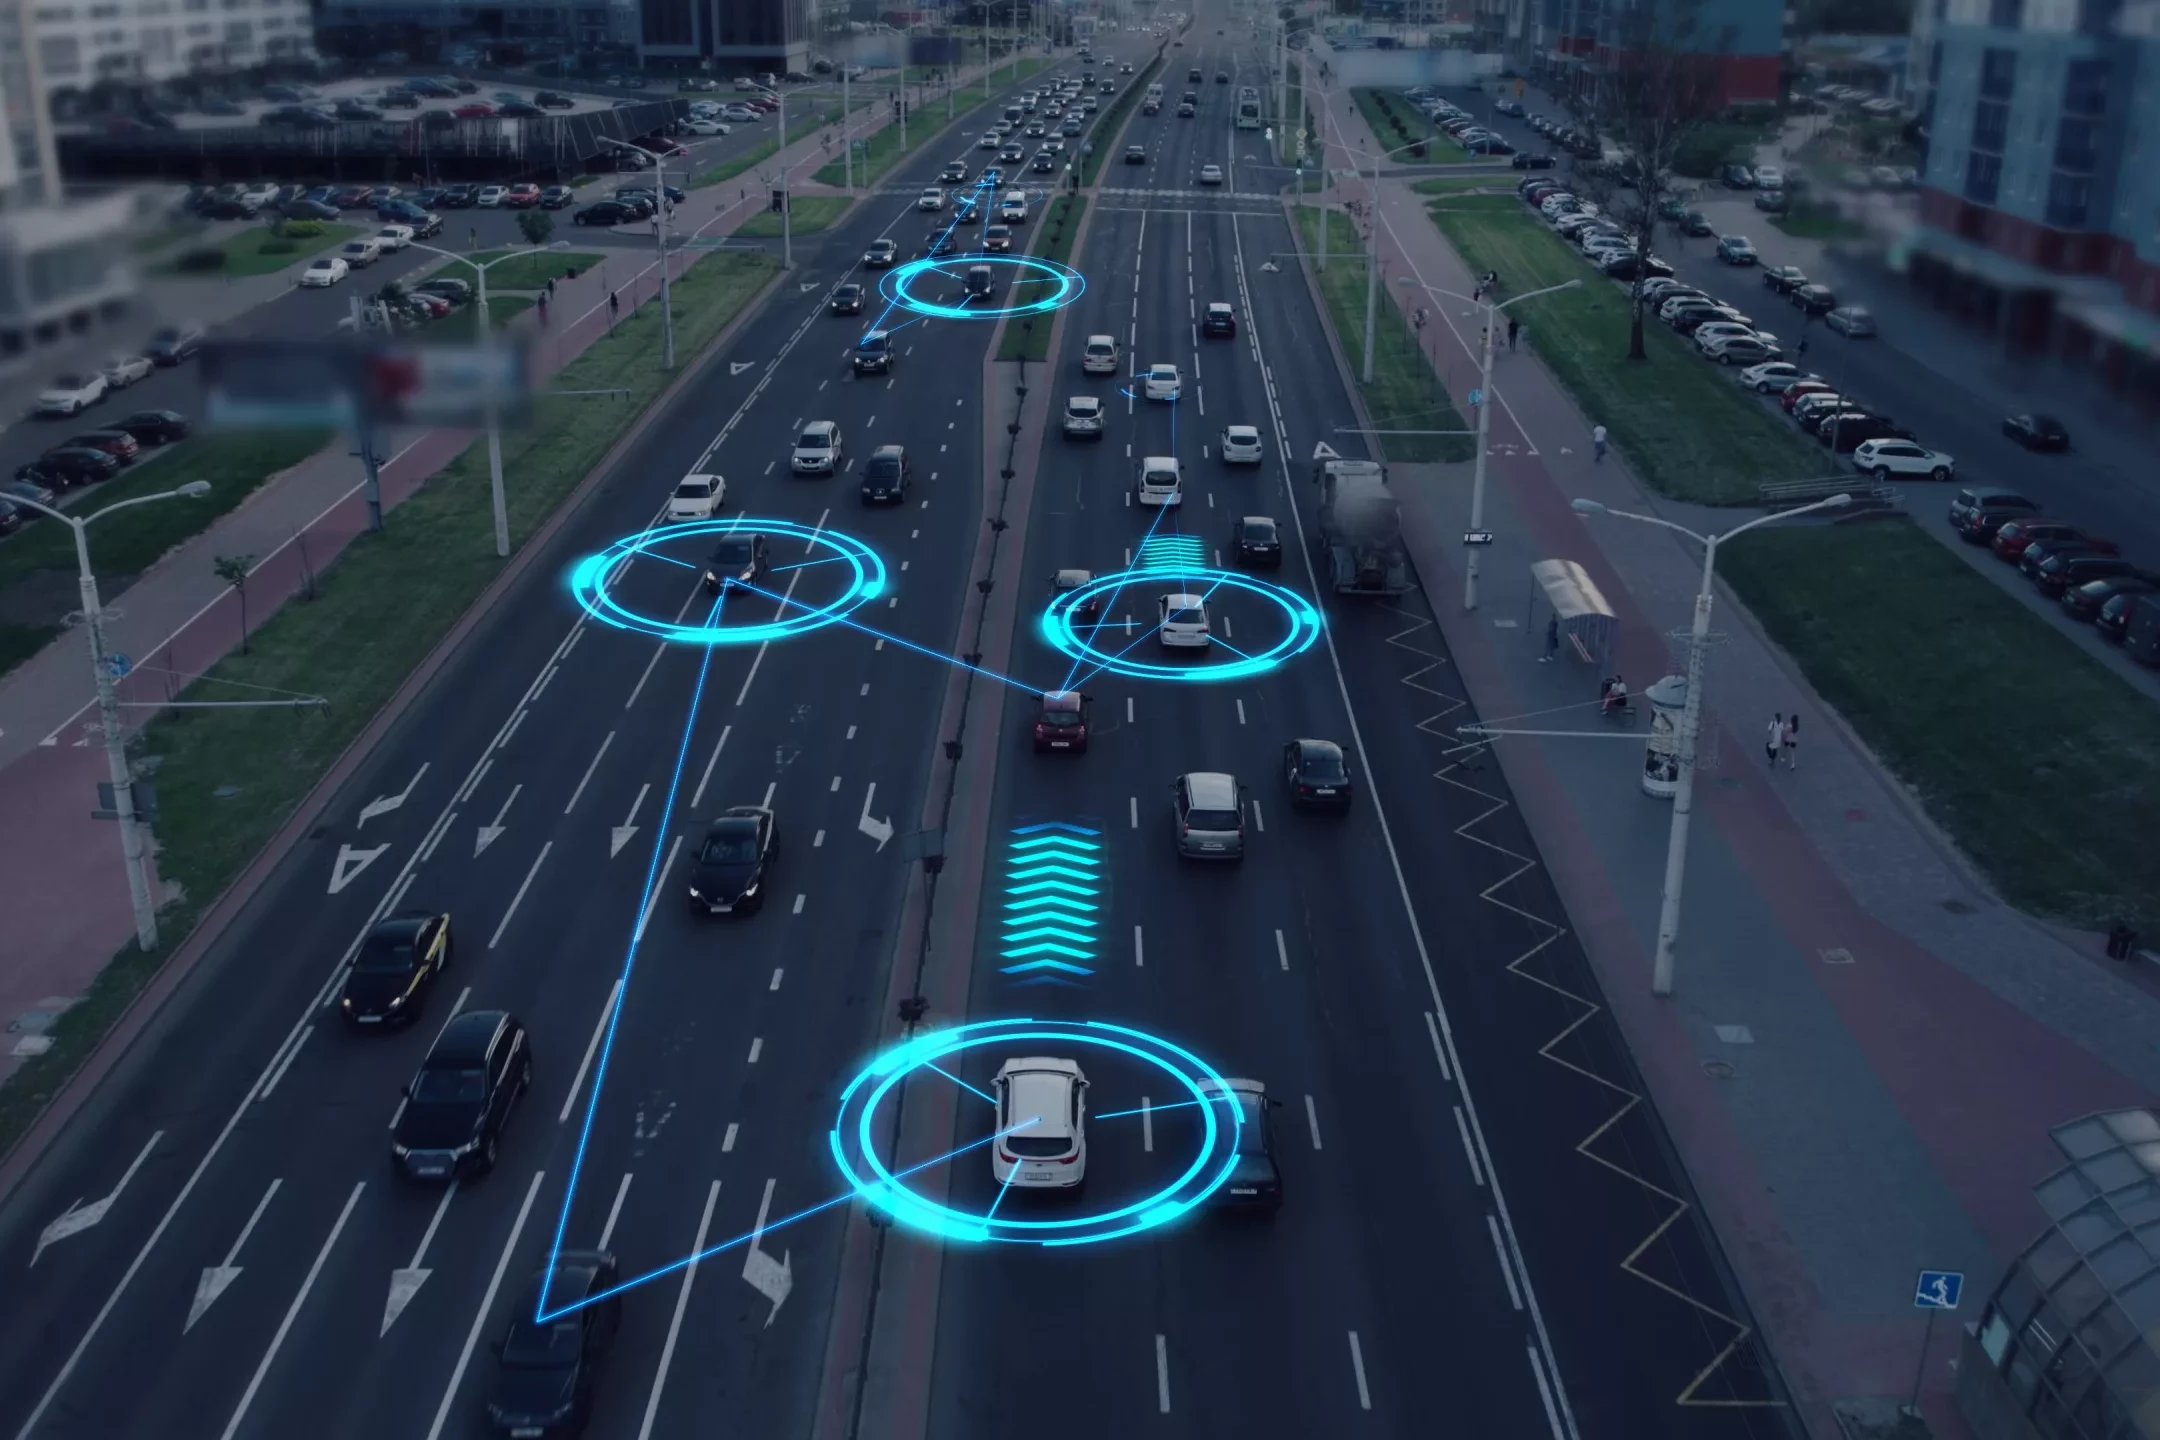 Visualisierung der Interaktion von selbstfahrenden autonomen Fahrzeugen. KI-gesteuerte Roboterautos fahren auf einer belebten Stadtstraße, scannen die Straße mit Sensoren und tauschen Informationen aus.